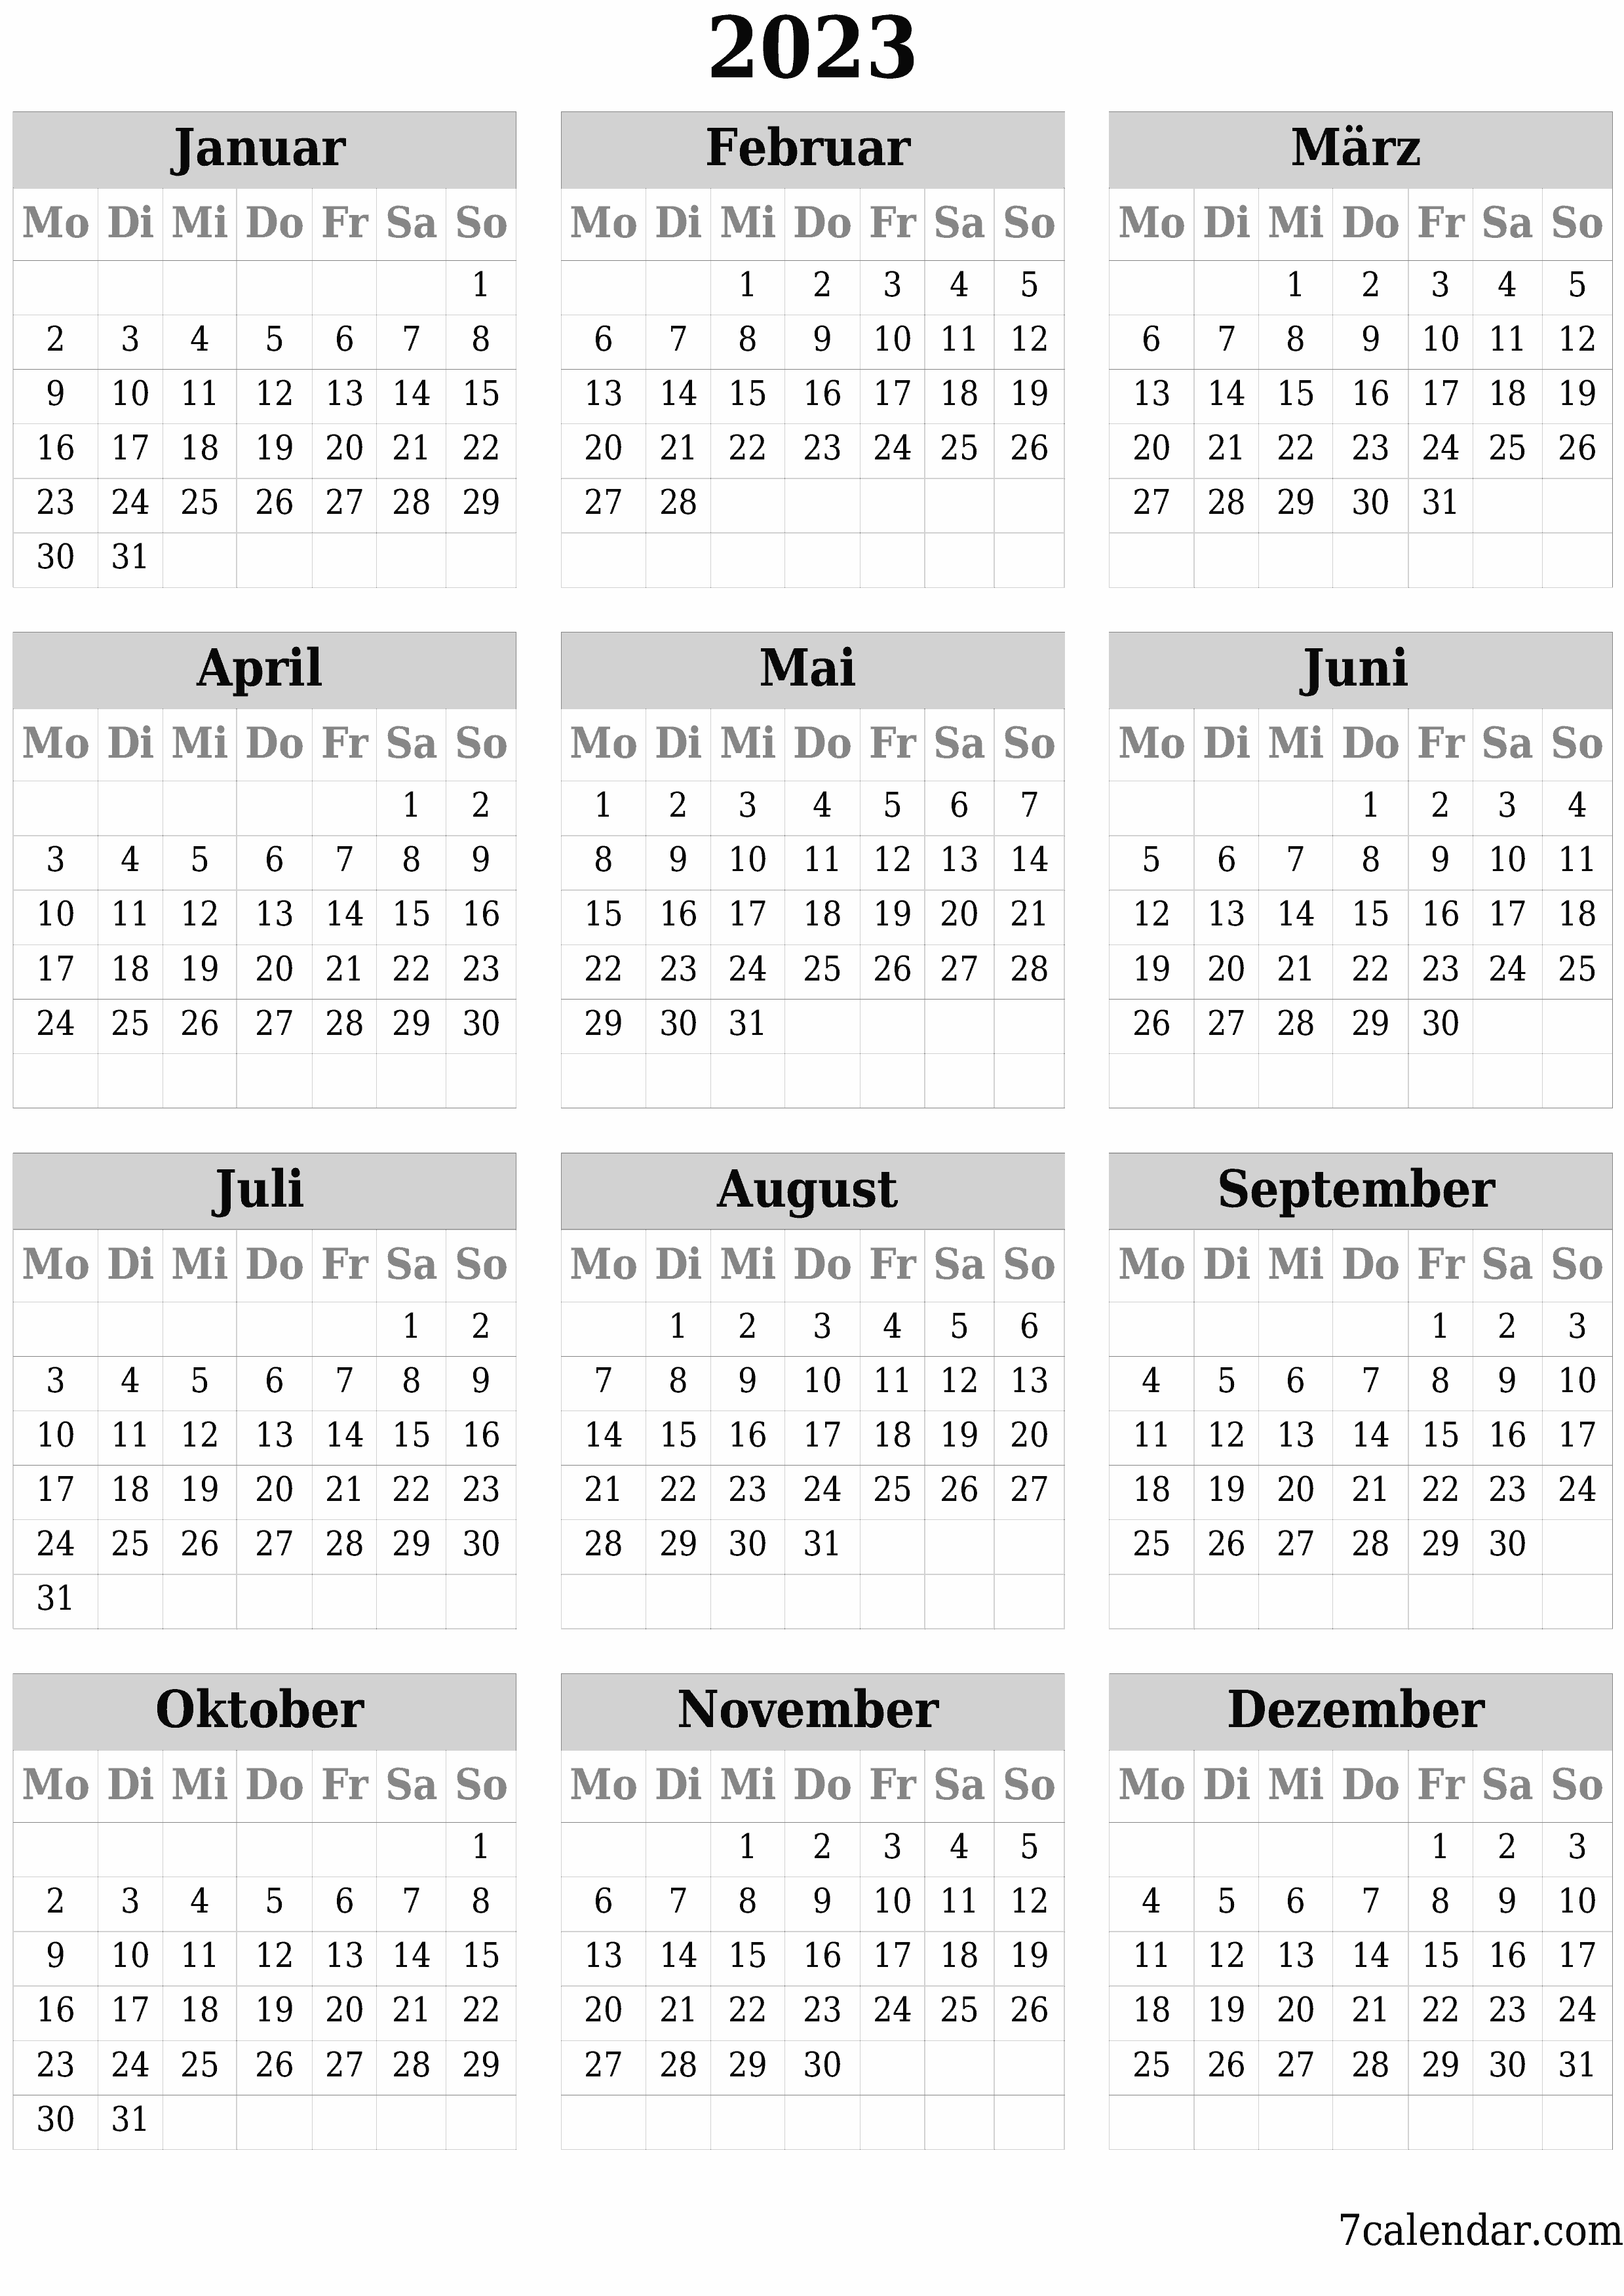 Leerer Jahreskalender für das Jahr 2023 speichern und als PDF PNG German - 7calendar.com drucken